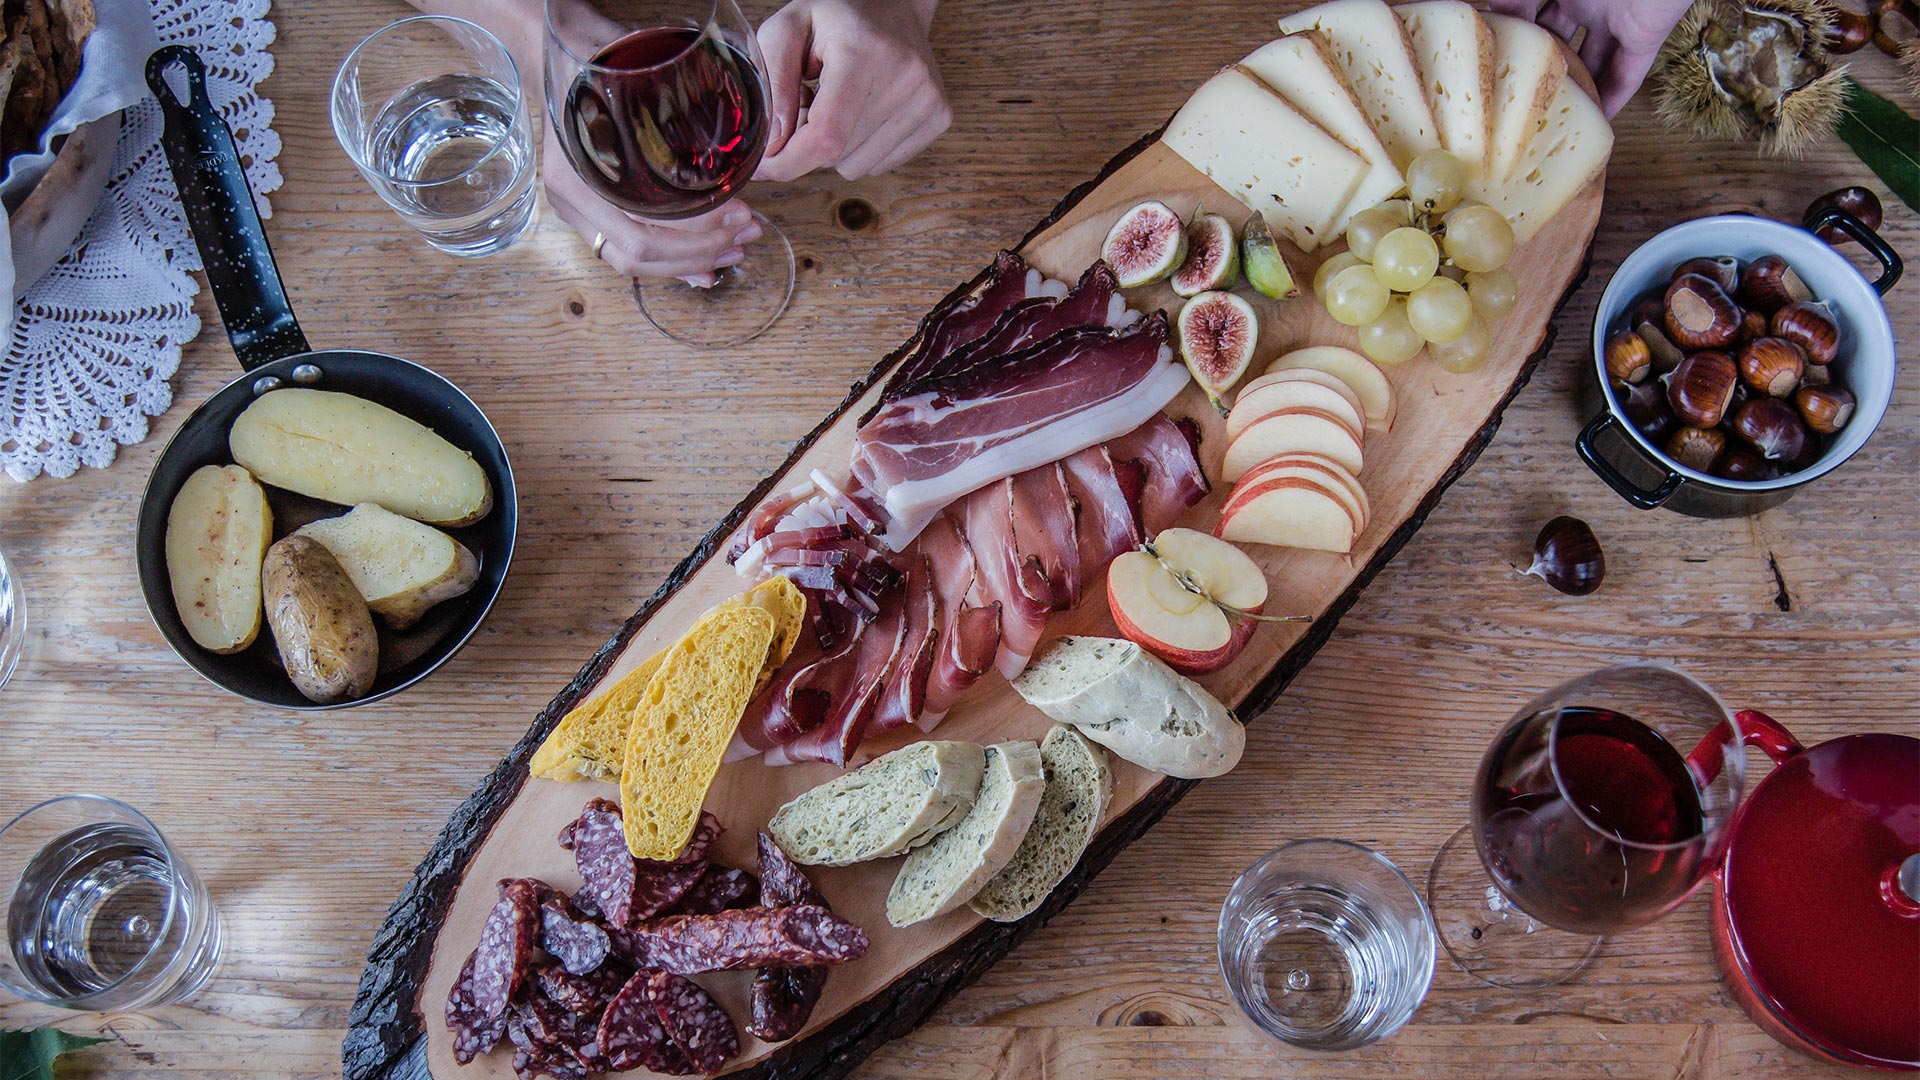 Piatto tradizionale dell'enogastronomia di Bolzano, con dei piatti autunali a base di carne e salumi accompagnati da un bicchiere di vino rosso.